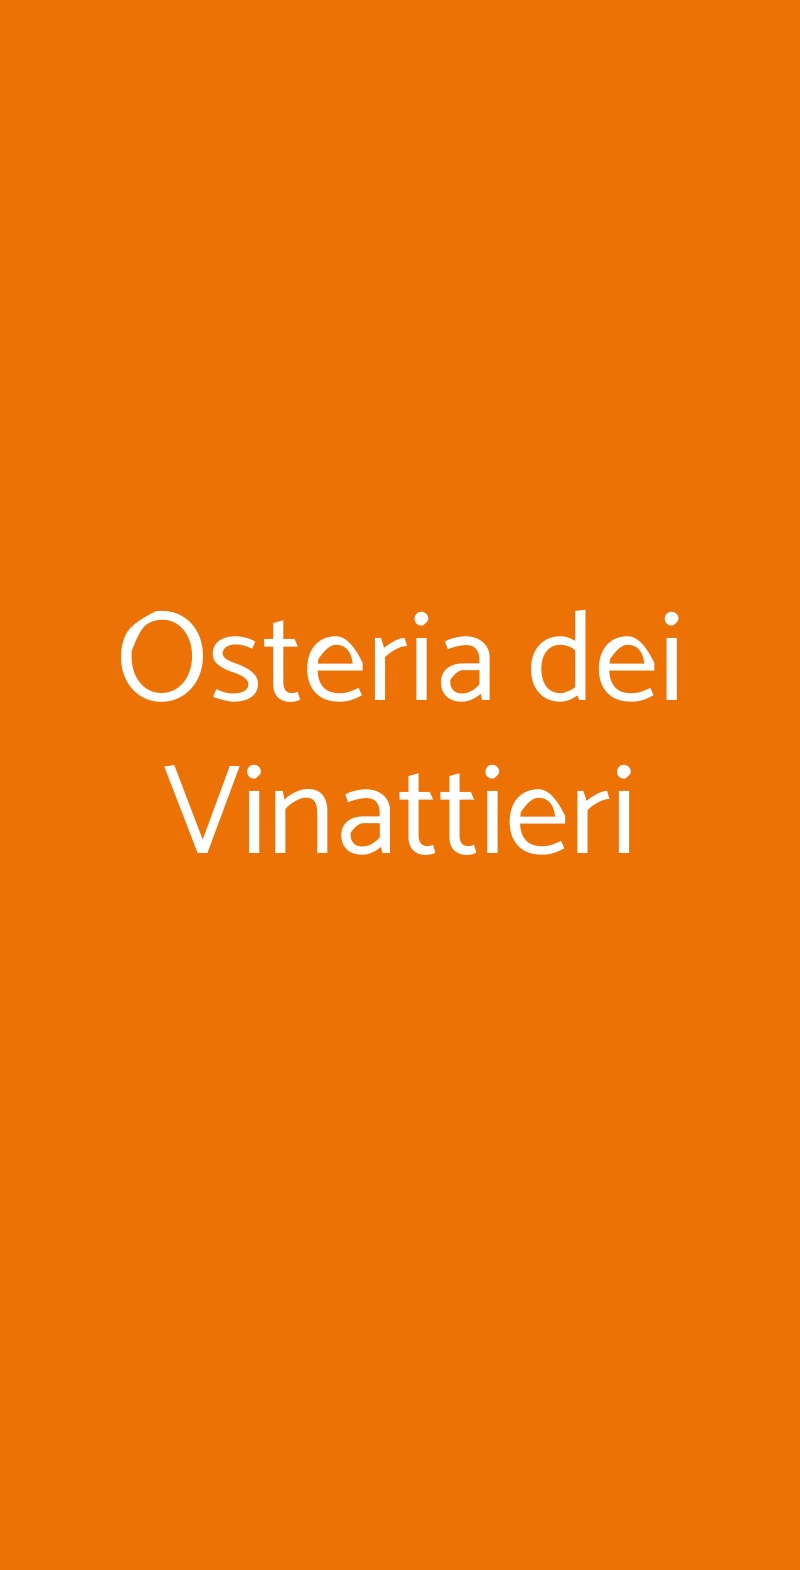 Osteria dei Vinattieri San Donato Milanese menù 1 pagina